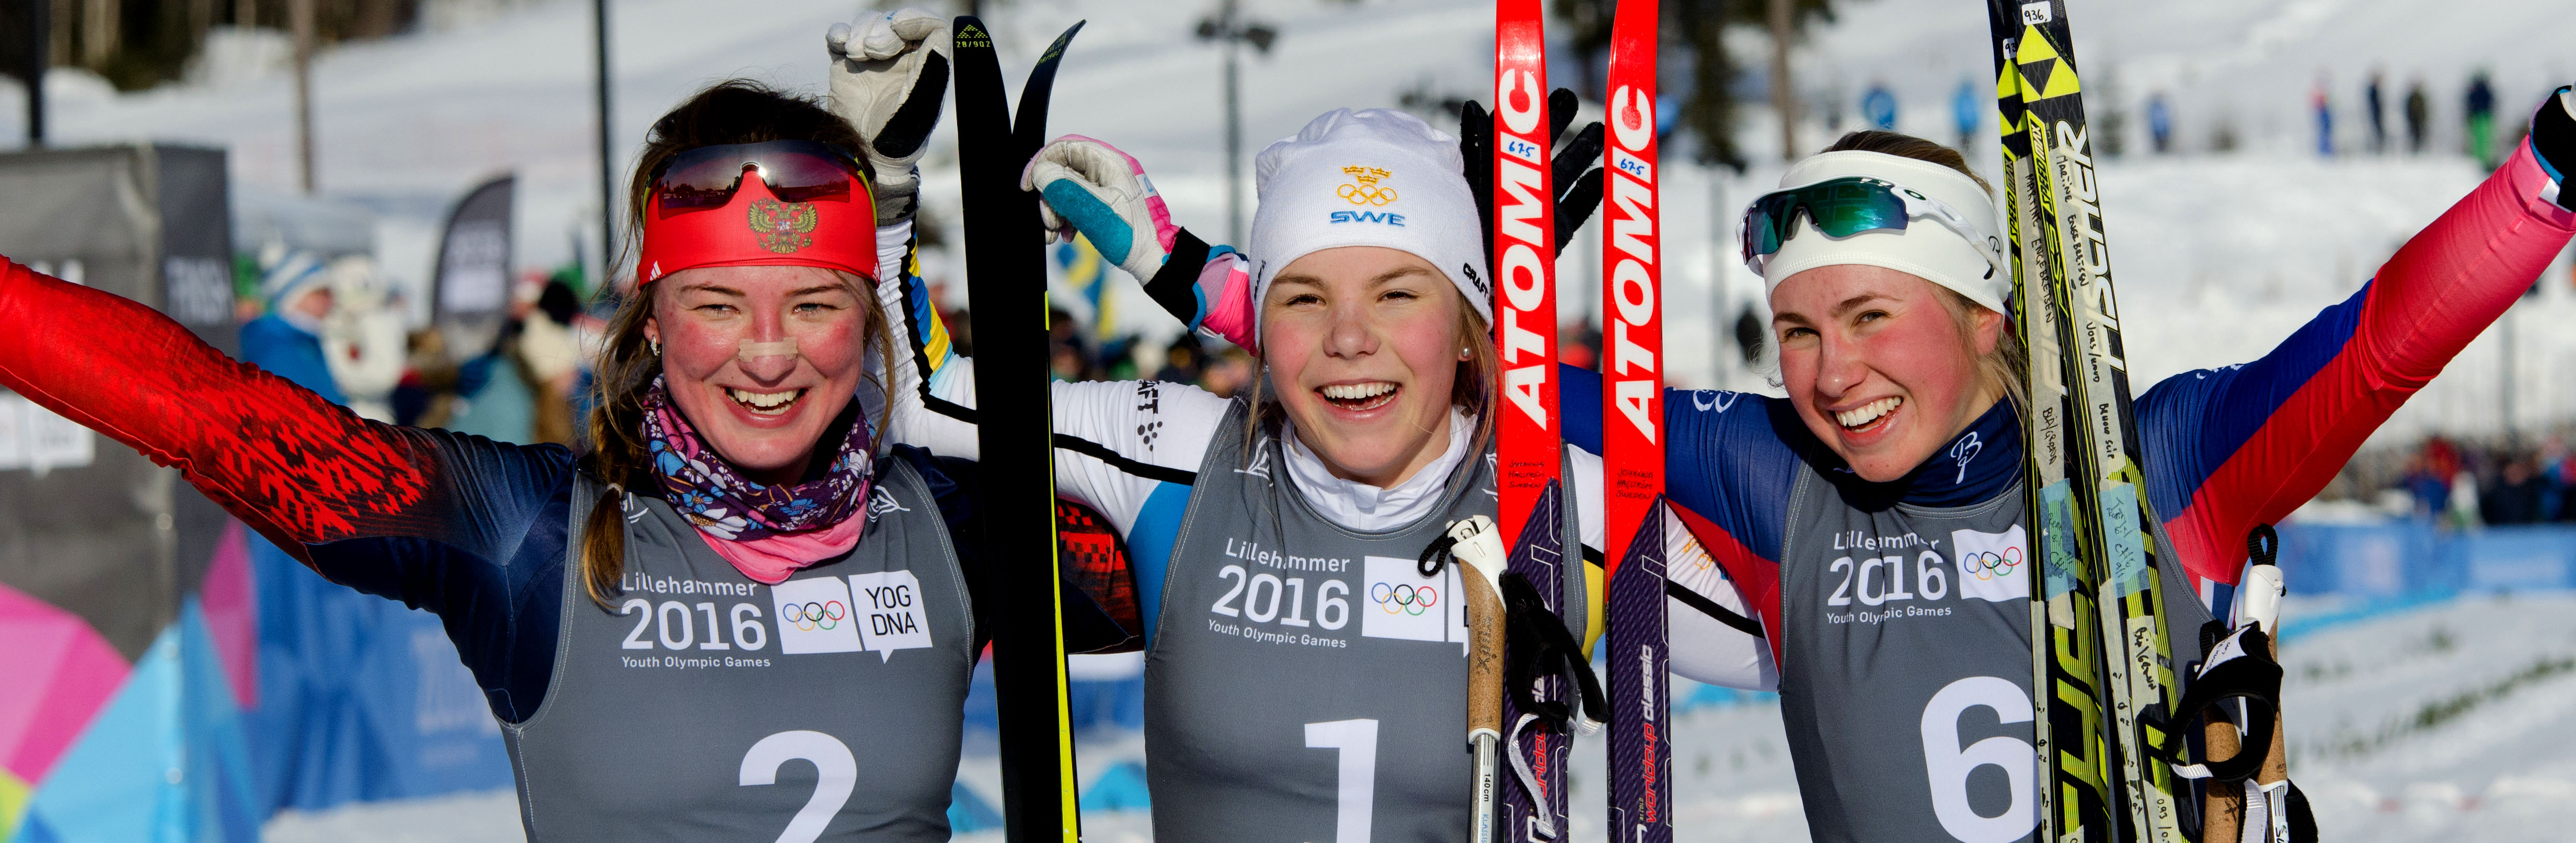 Ved å spille på hele bredden i norsk idrett ble Lillehammer 2016 en suksess, skriver Magnus Sverdrup i denne bloggen. Foto: Sondre Aarholdt Moan/Lillehammer 2016